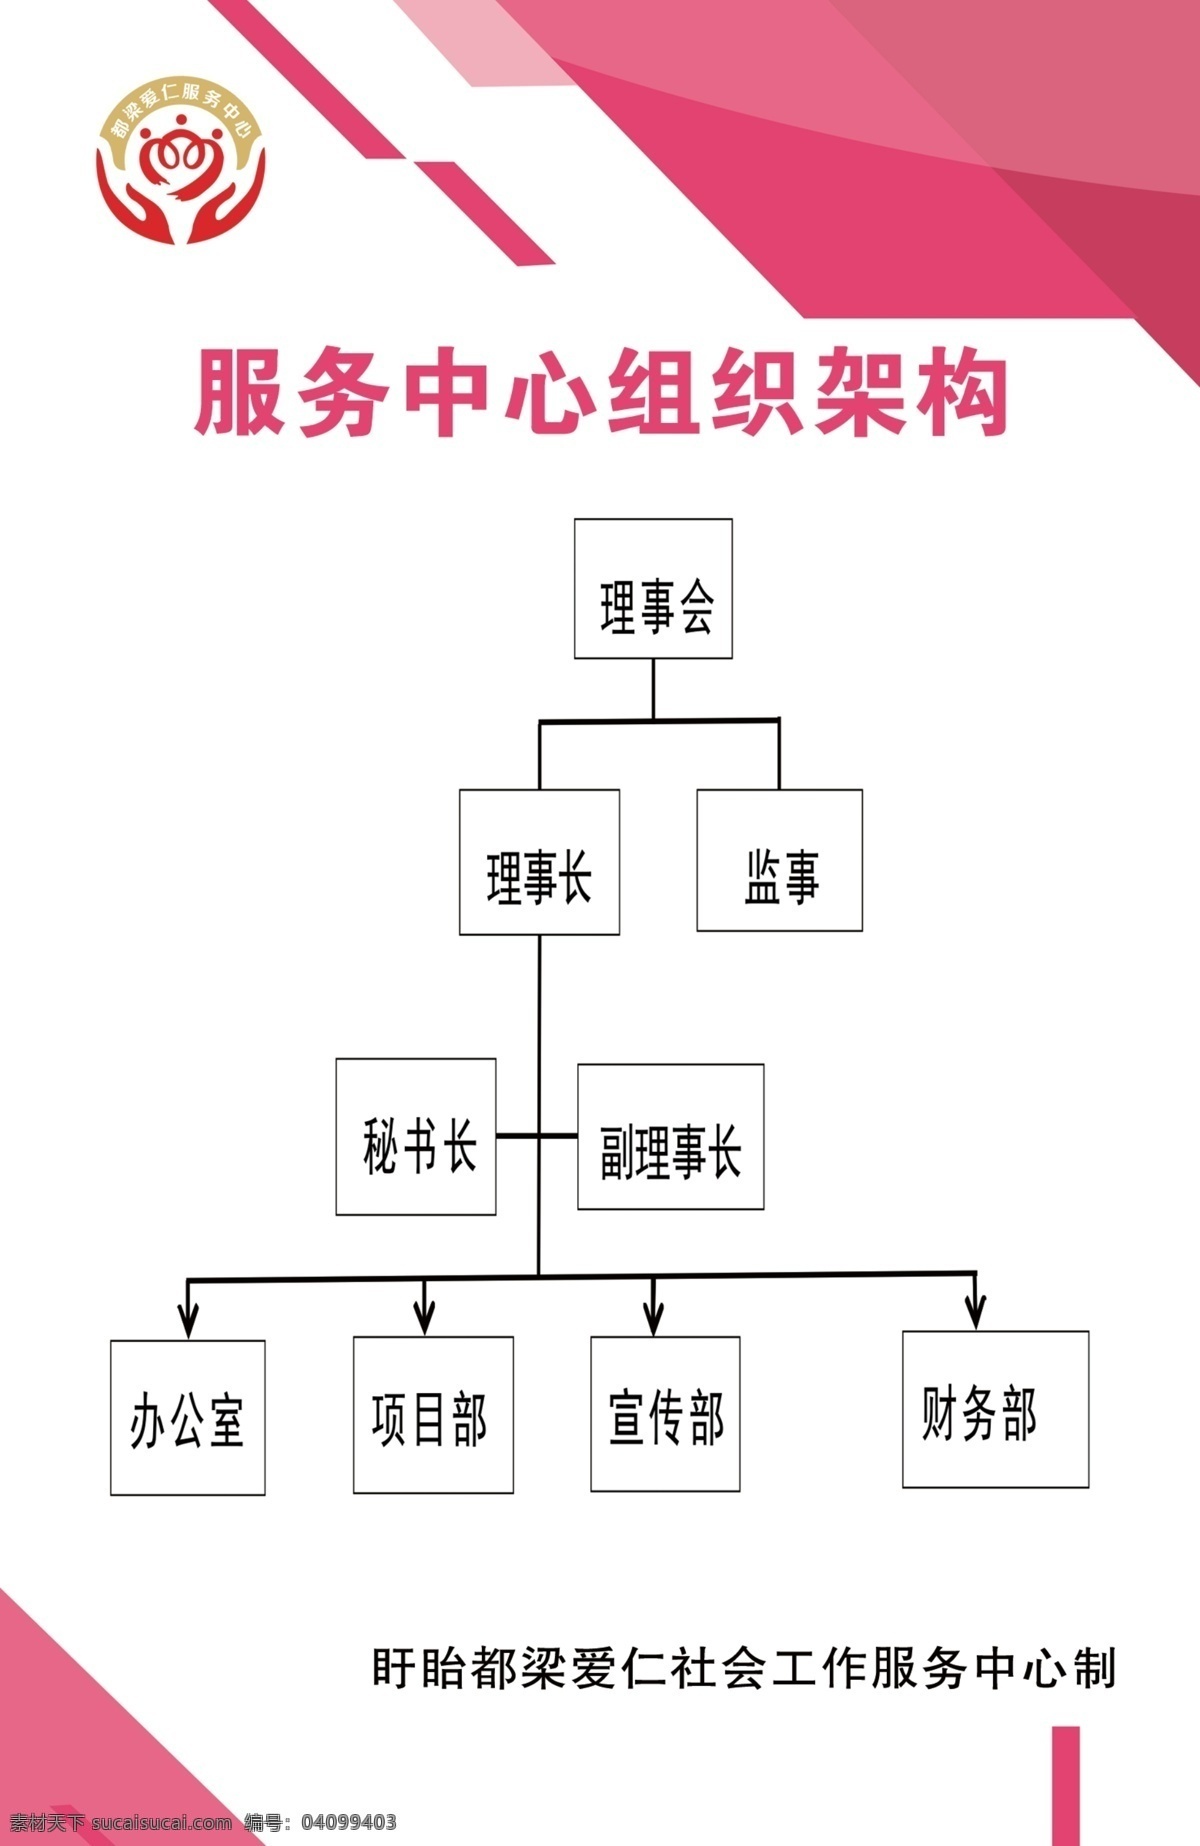 服务中心 组织架构 图 组织 架构图 组织图 序列图 分层